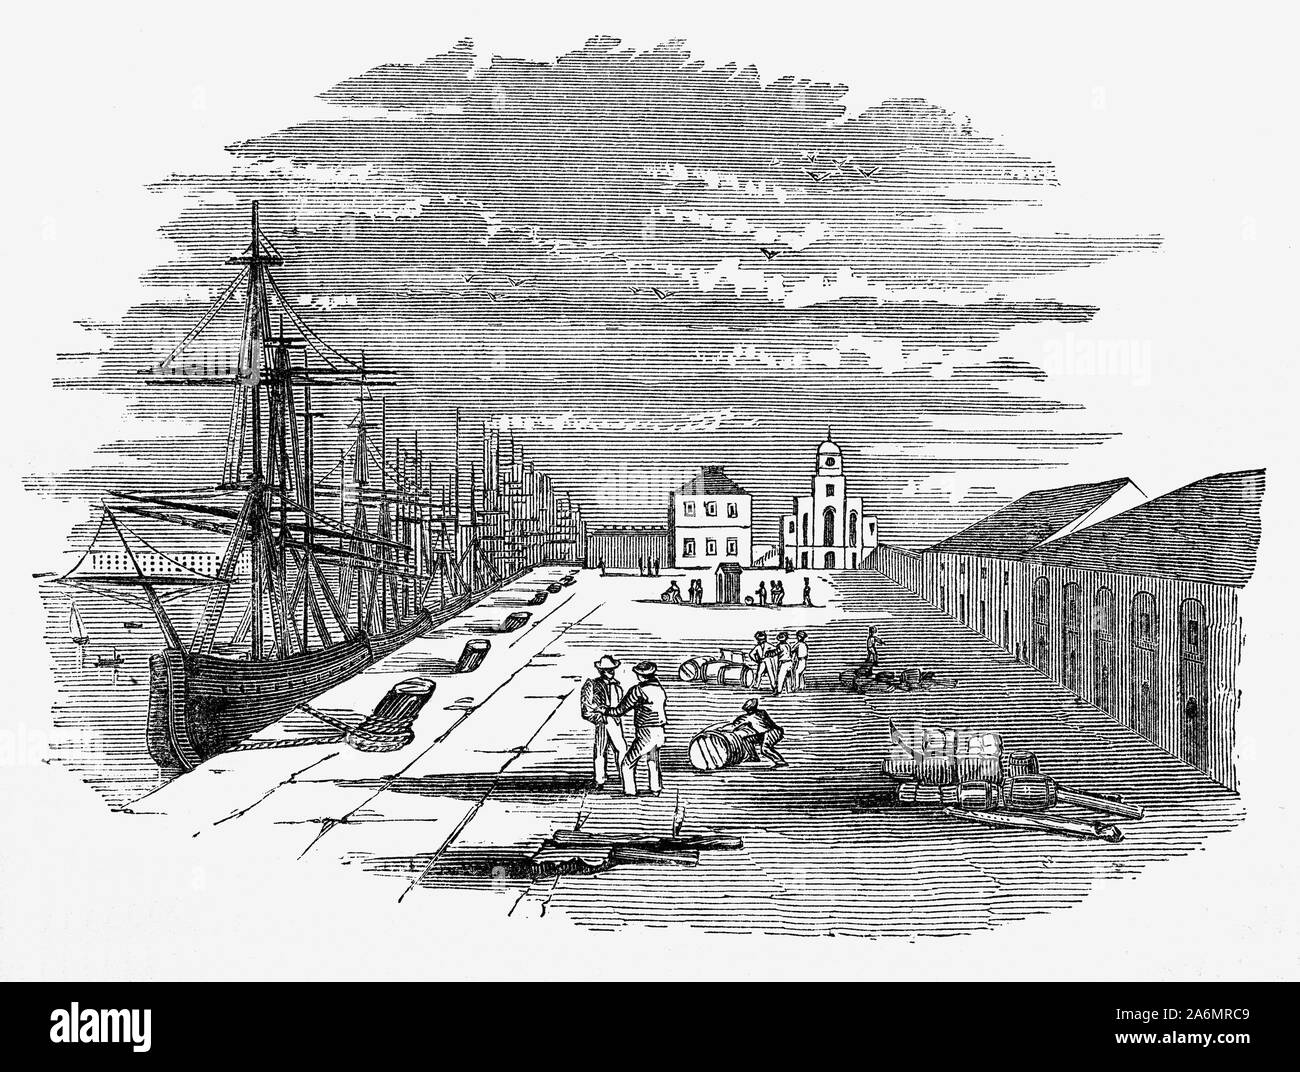 Die East India Docks Importieren von Ingenieur Ralph Walker, waren im Nordosten der West India Docks, London. Sie waren auf die bestehenden Brunswick Dock, die für die herrichtung und Instandsetzung von Schiffen als Teil der Blackwall Werft eingesetzt wurden. Die Brunswick Dock, die ursprünglich direkt an der Themse im Süden verbunden war, wurde der Export Dock. Im Norden das Unternehmen eine größere Import Dock gebaut. Beide waren an der Themse über einen östlichen Eingang Becken angeschlossen. Stockfoto